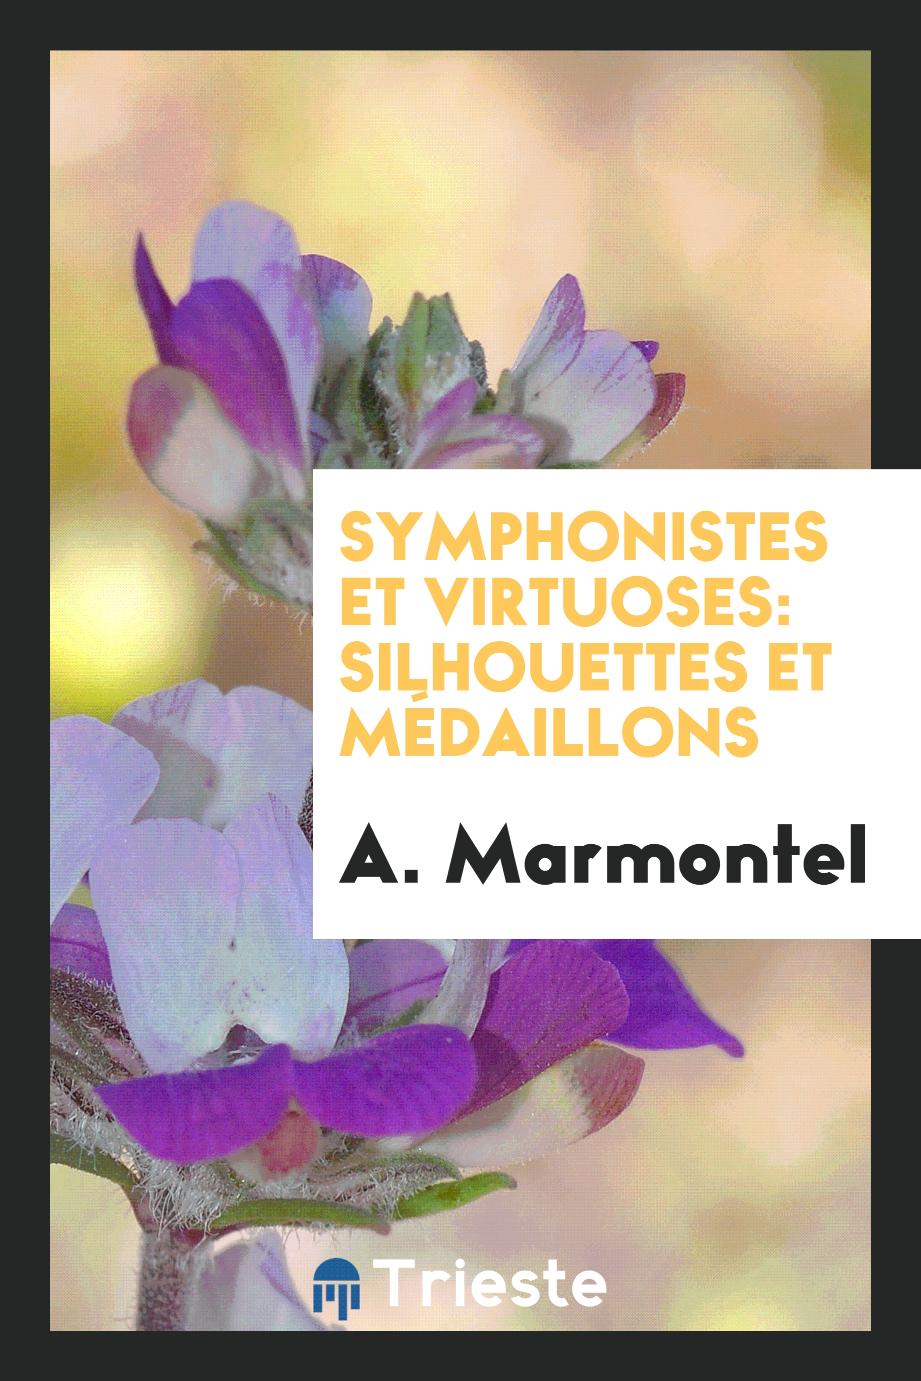 Symphonistes et virtuoses: silhouettes et médaillons